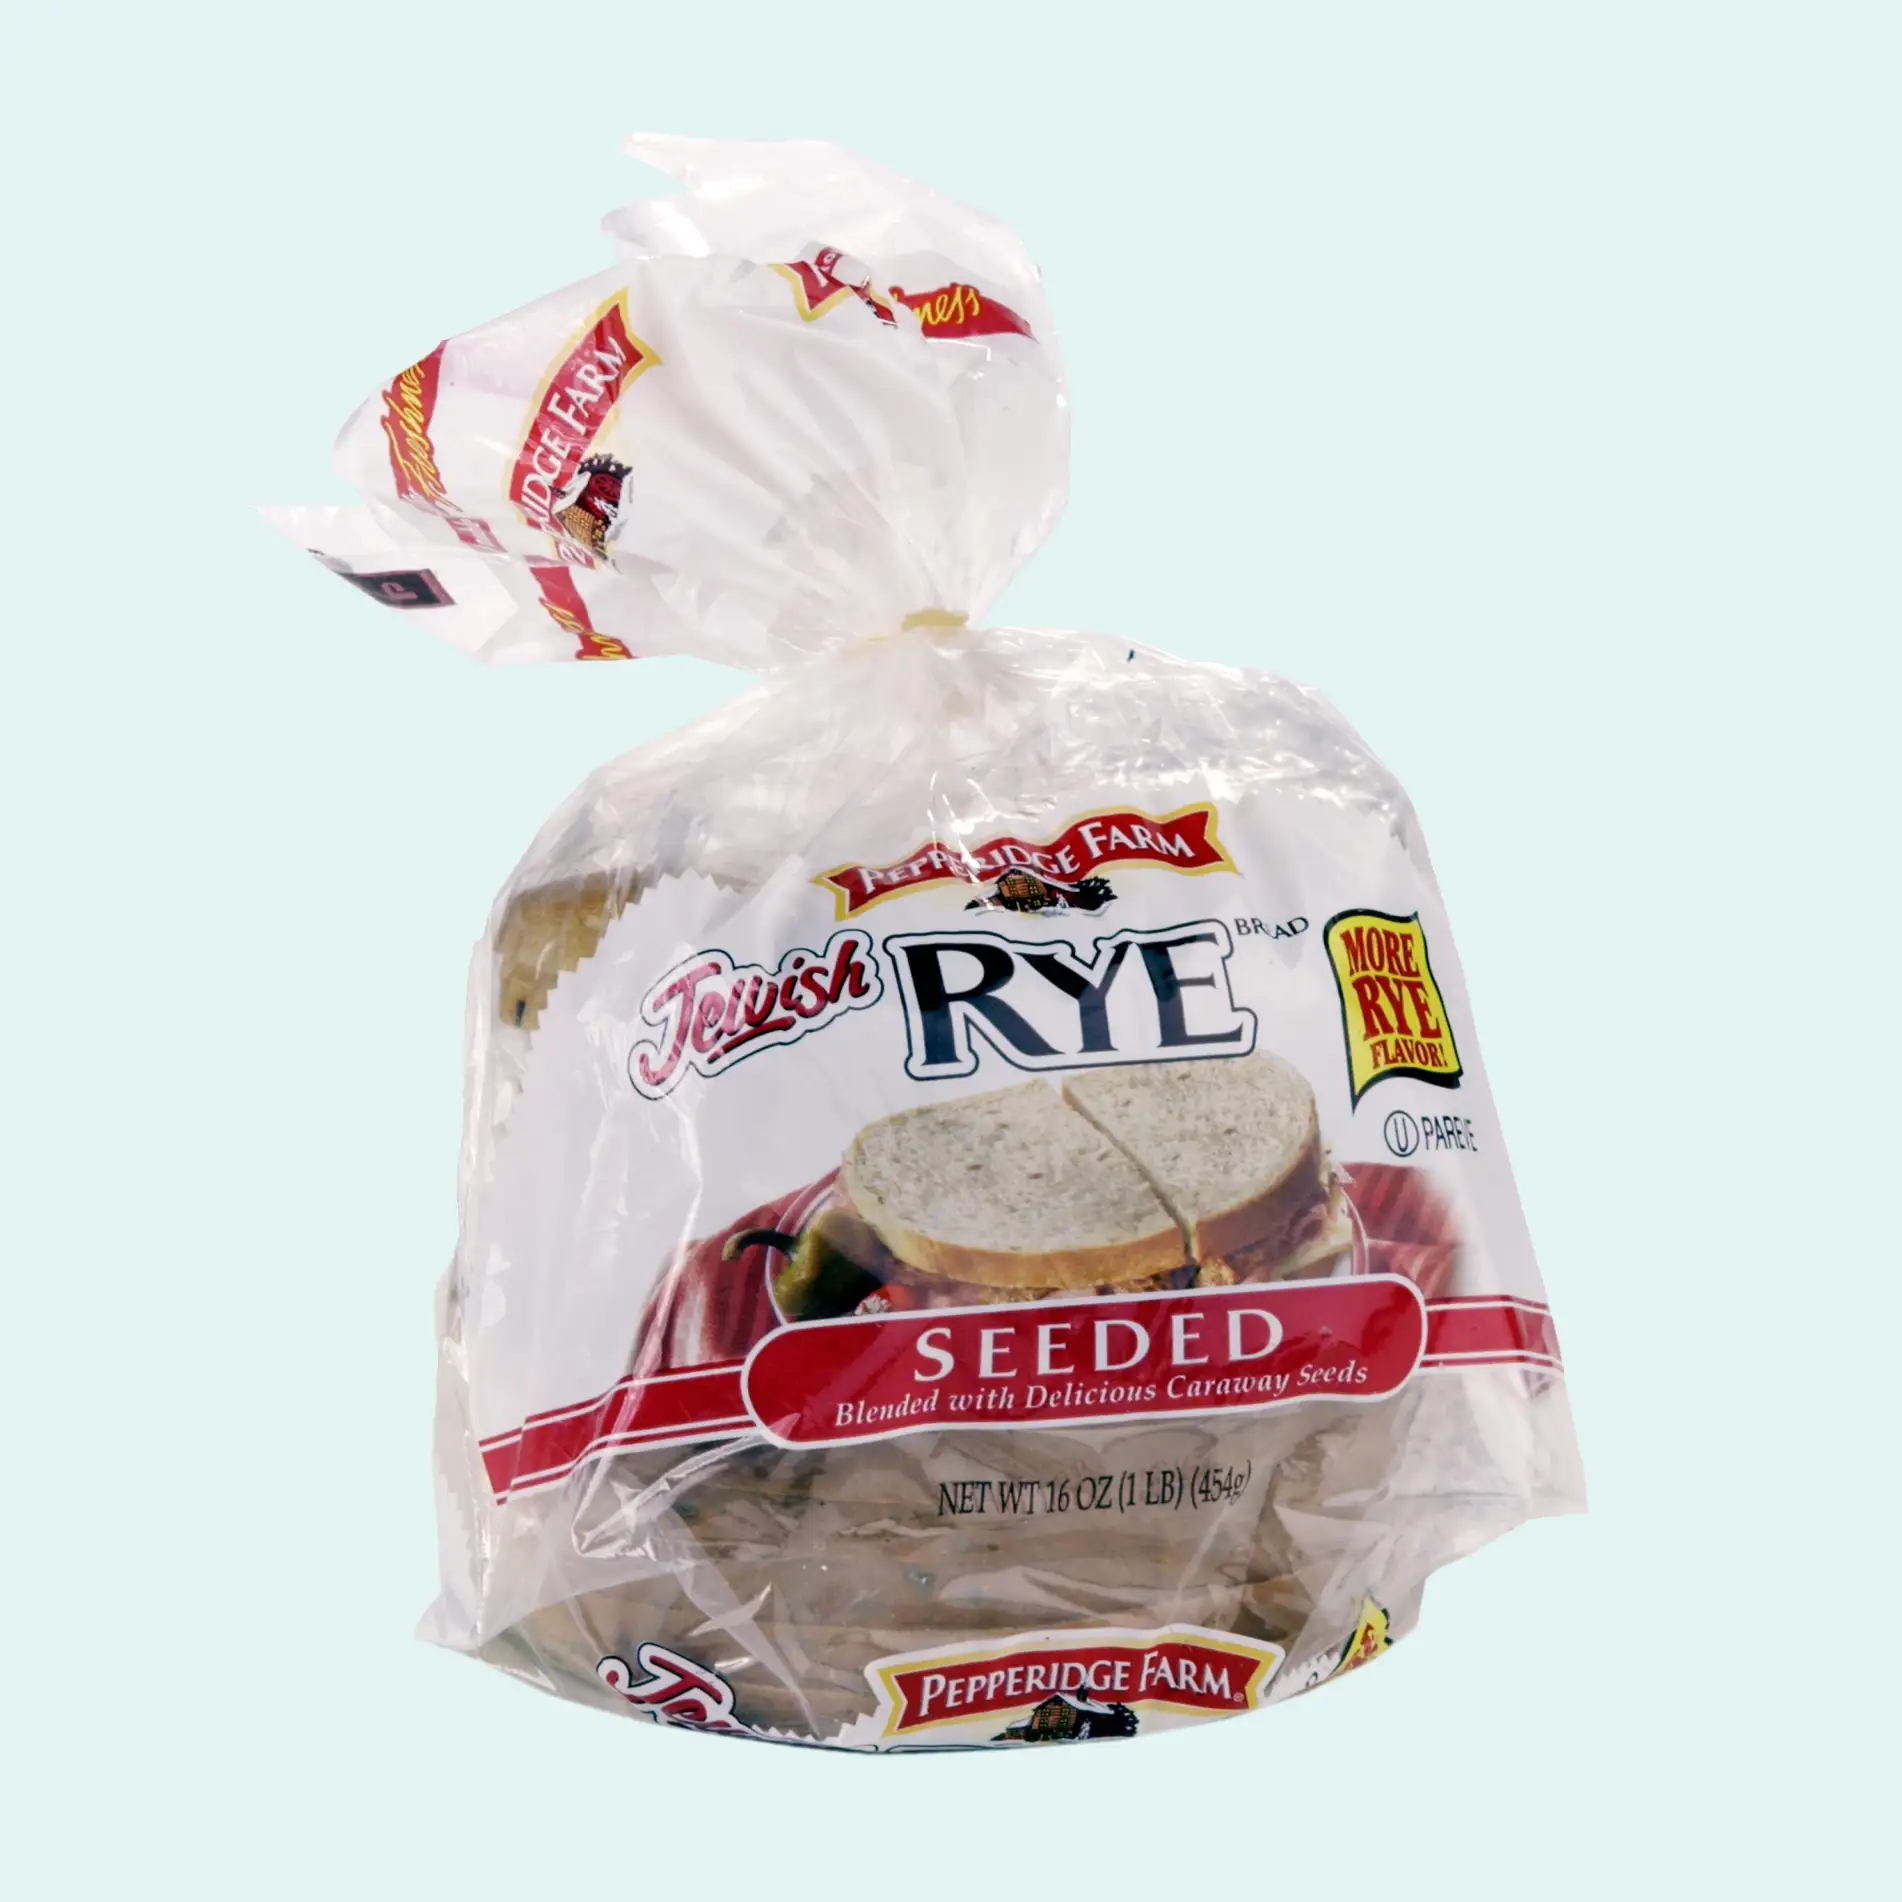 170713-food-brands-dying-pepperidge-farm-bread